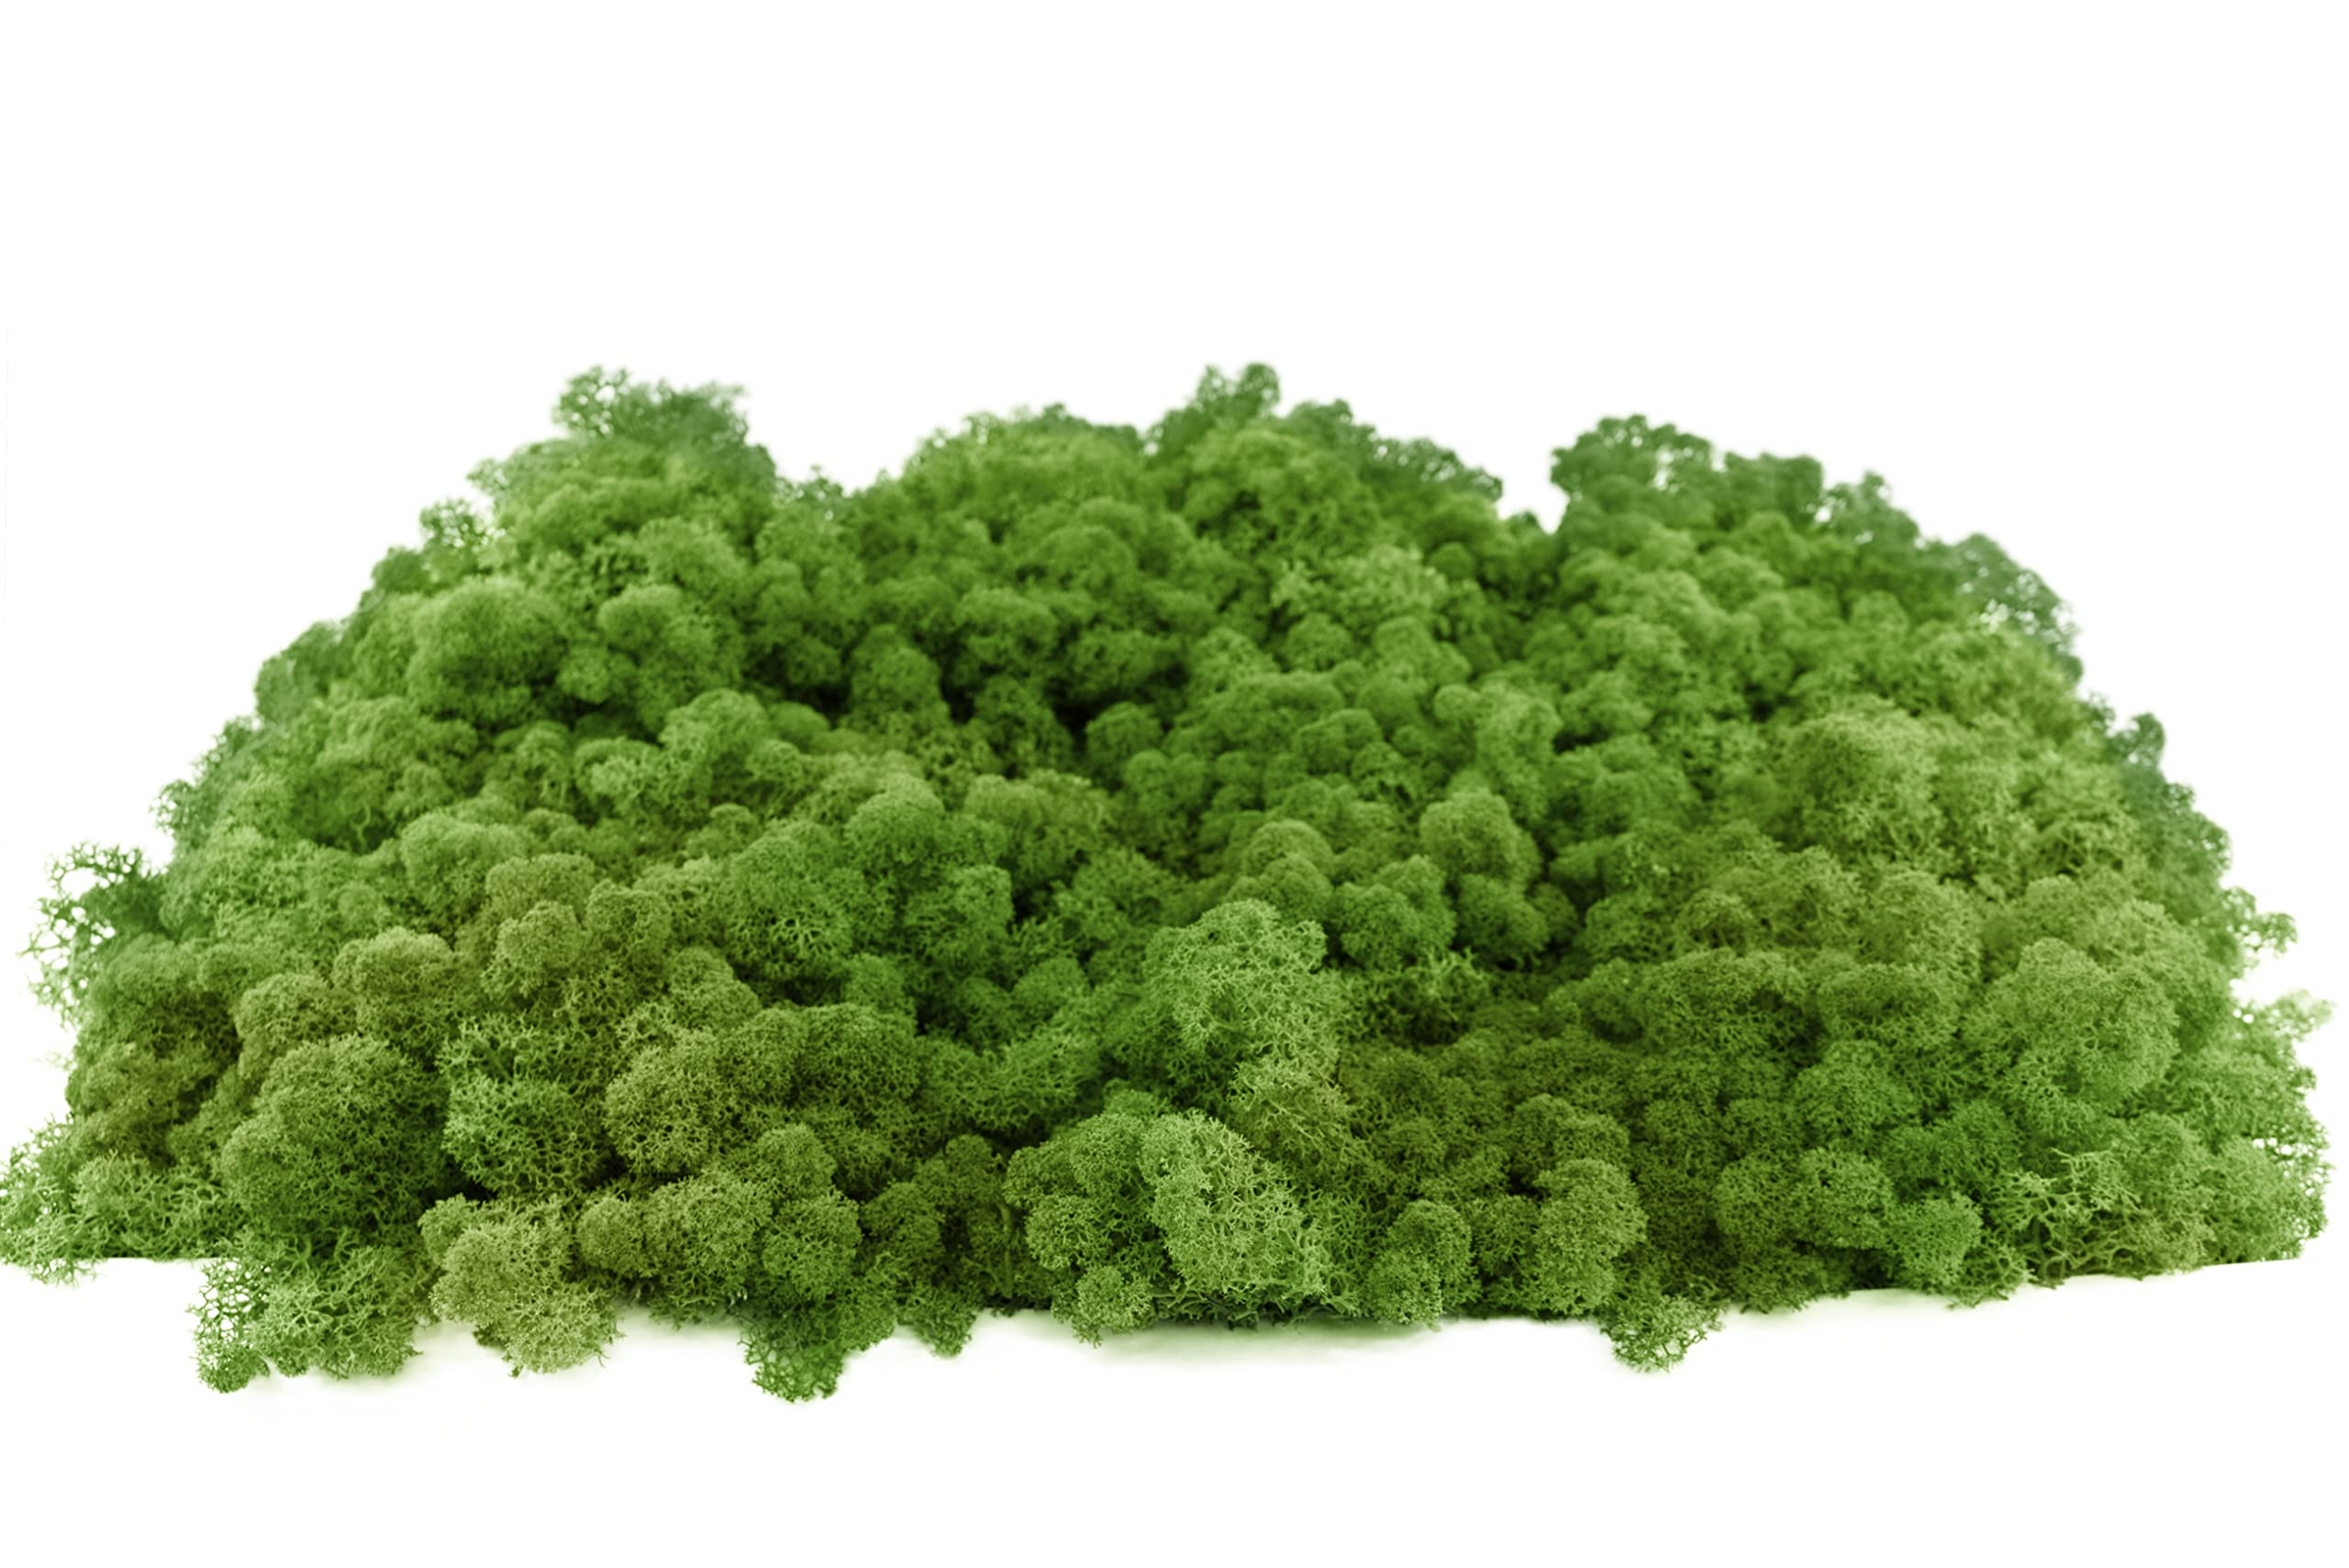 INMO Moos - Islandmoos echtes Natur Moos konserviert 1 KG Waldgrün. Dekomoos zum Basteln, Moosbild, Wand-Bilder, Wanddeko, Modellbau weitere Farben und Mengen zur Auswahl 40g - 500g 1 KG - 4 KG